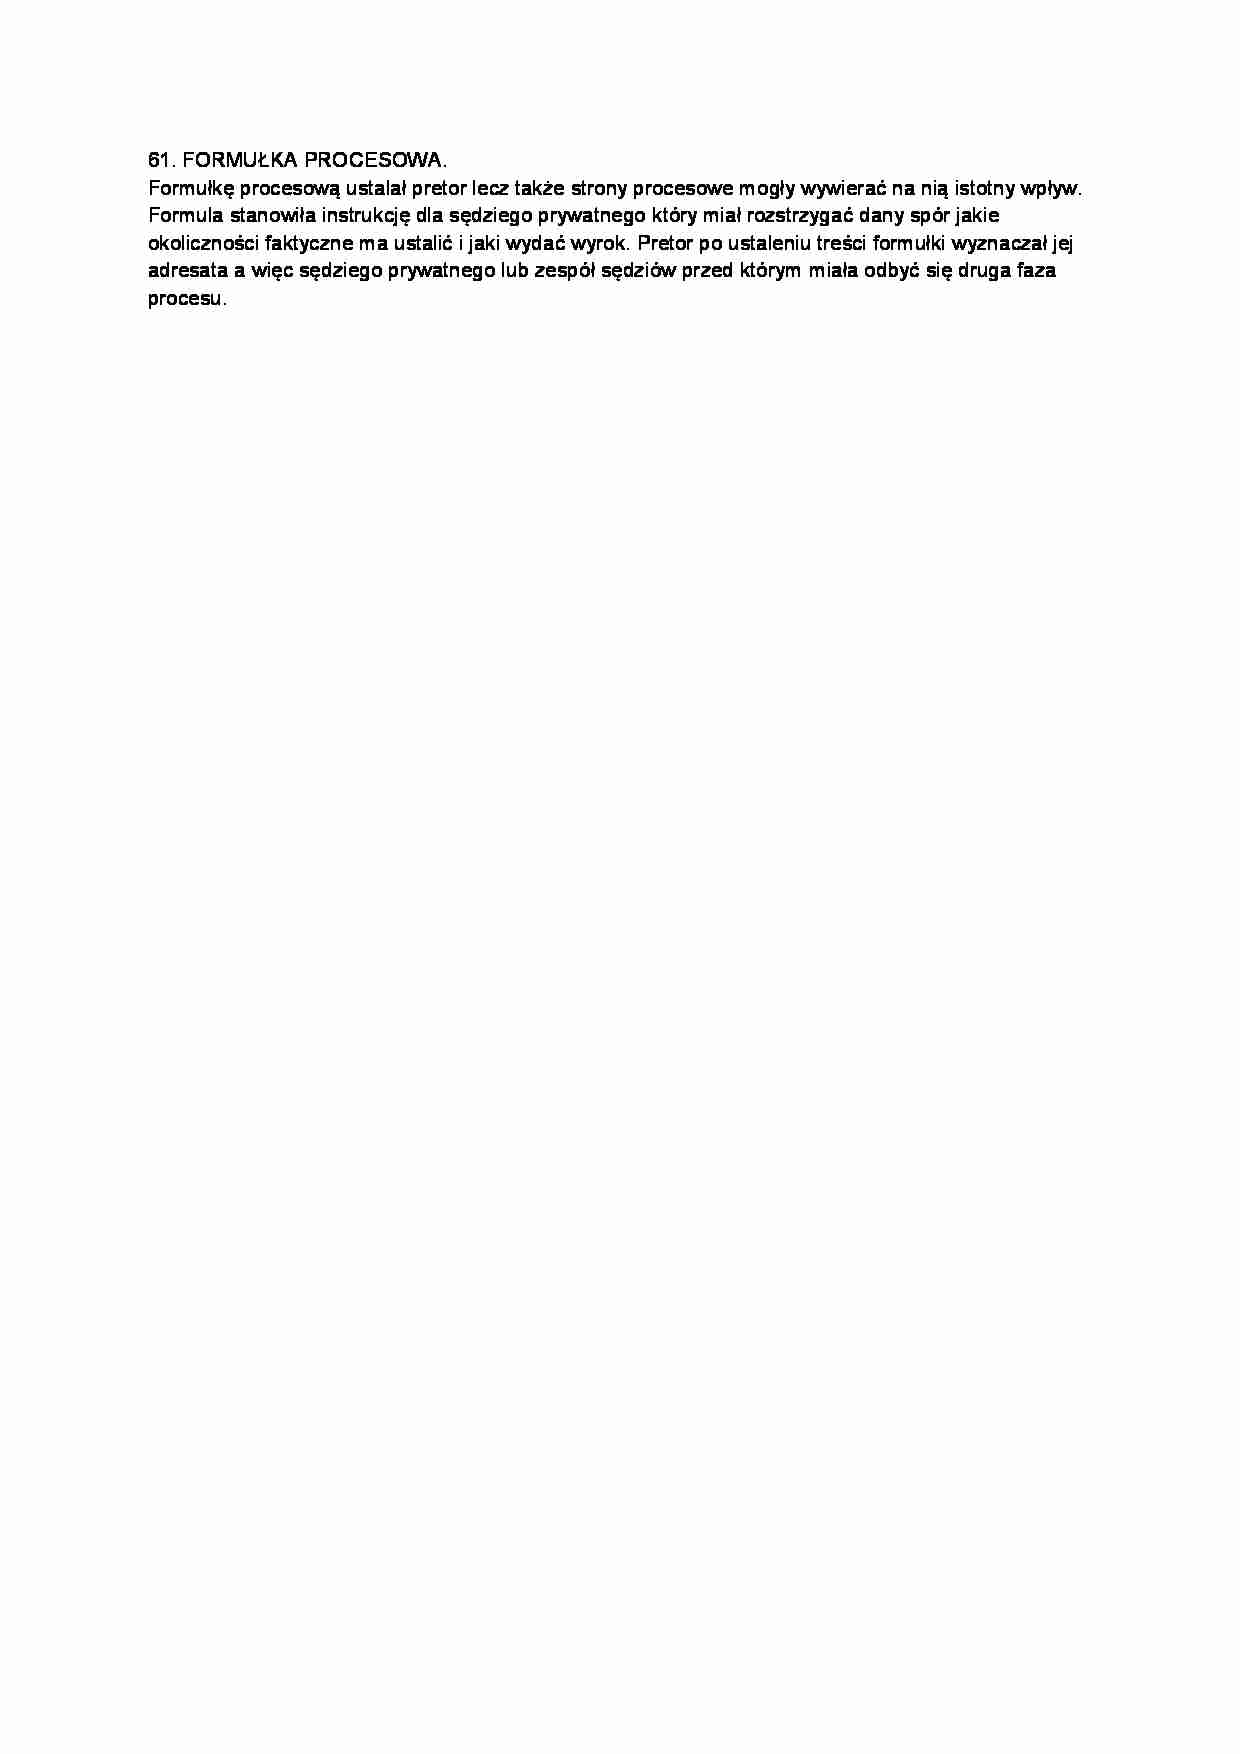 Formułka procesowa-opracowanie - strona 1